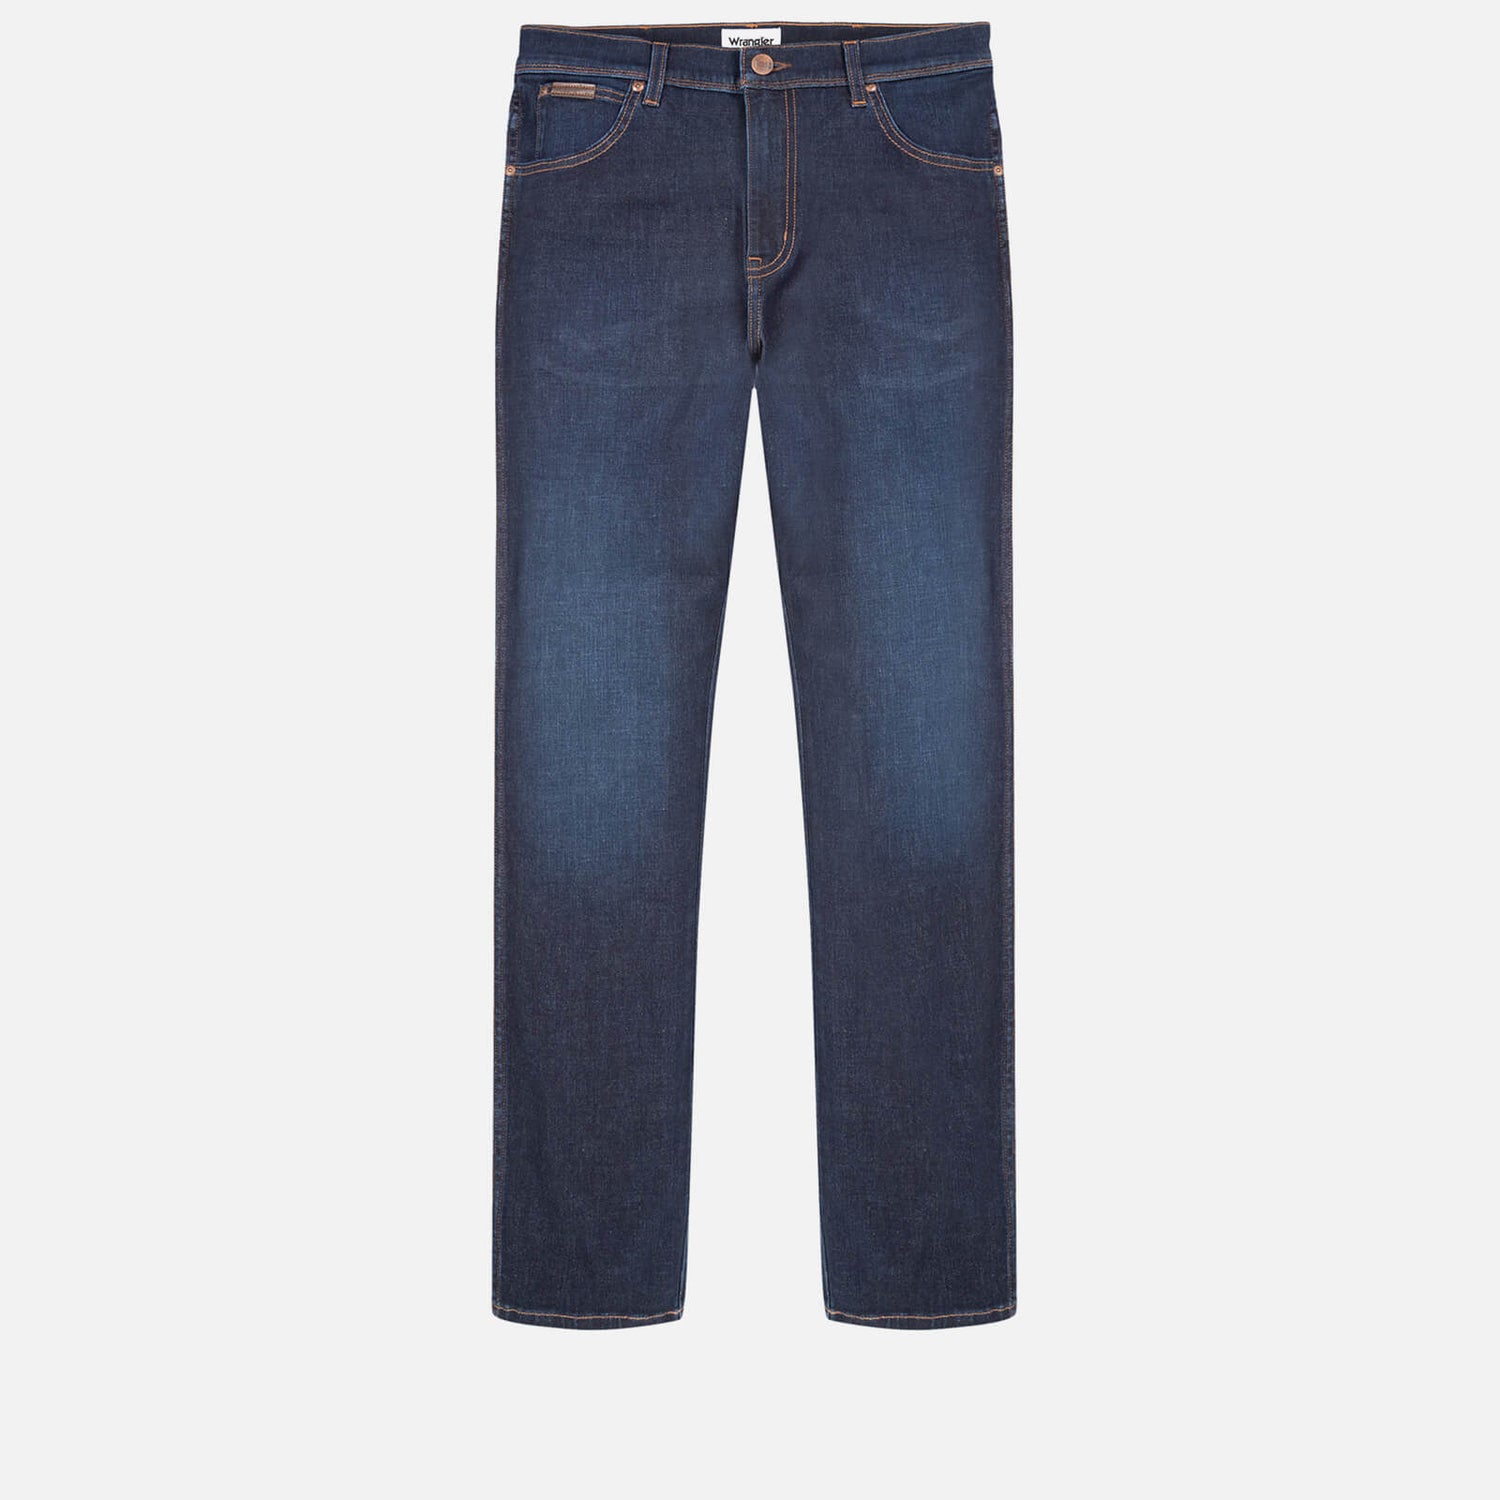 Wrangler Texas Slim Fit Cotton-Blend Jeans - W30/L32